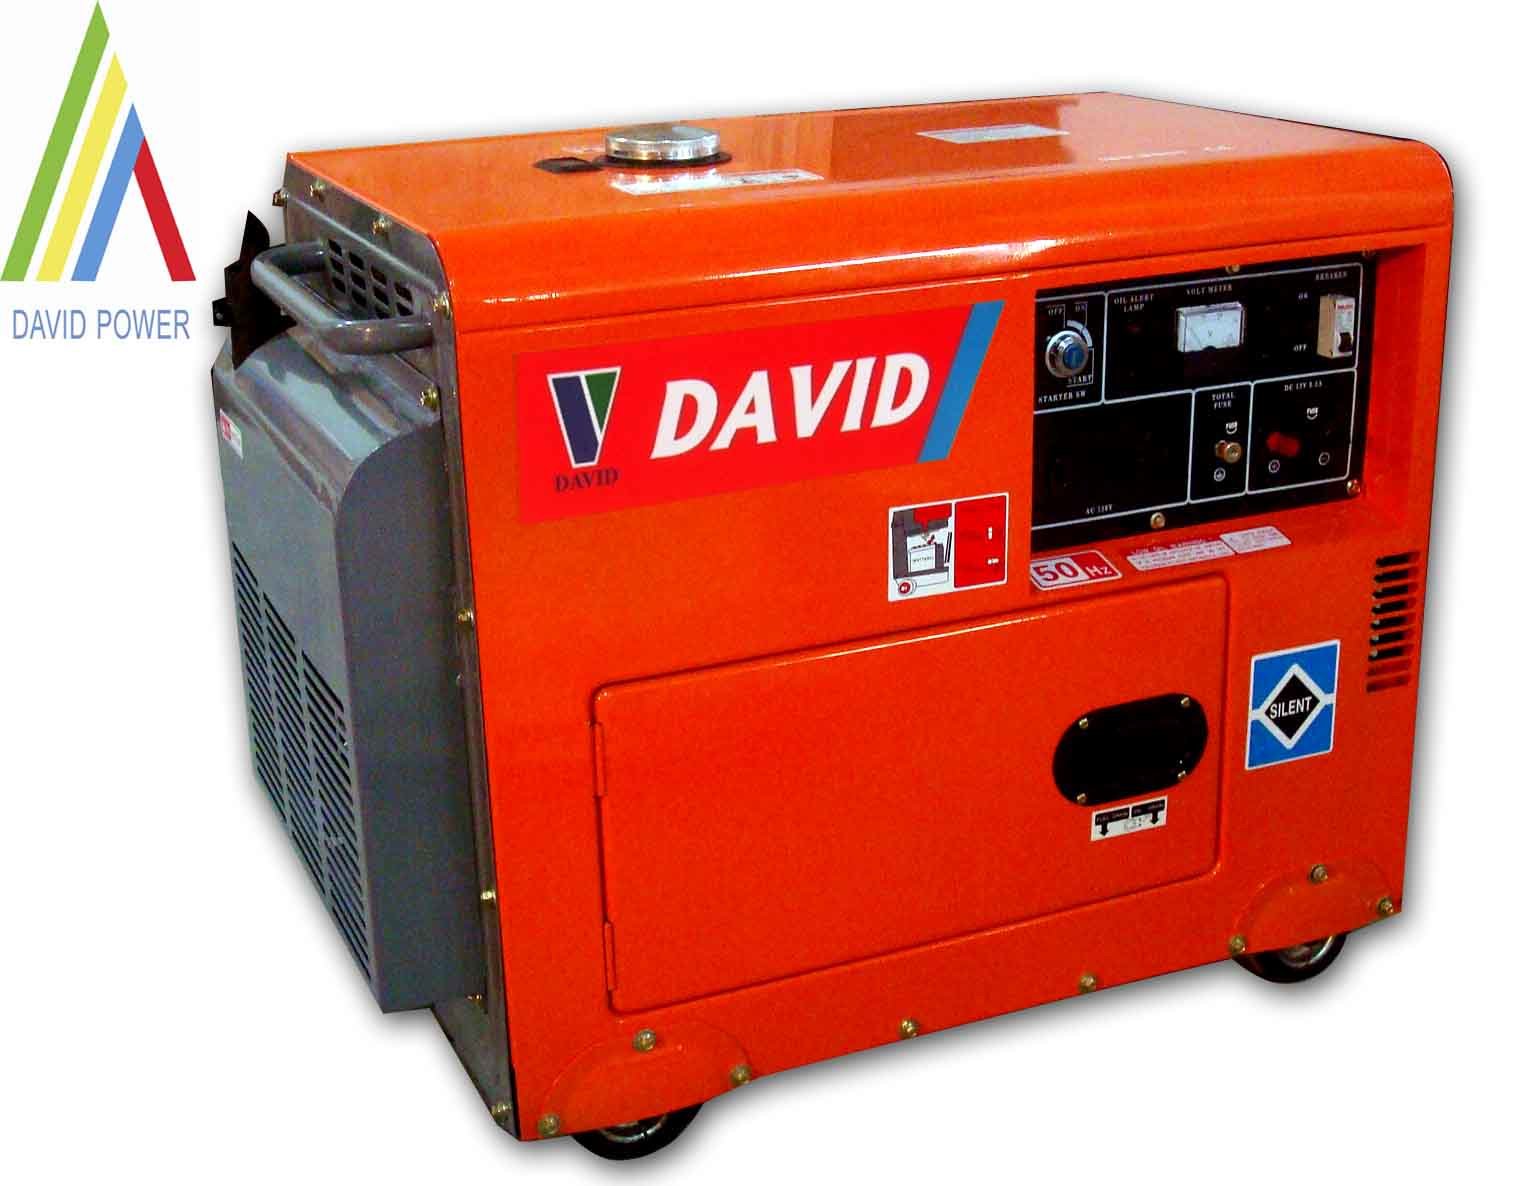 Silent Diesel Generator (DV3600S/DV5000SDV6000S)